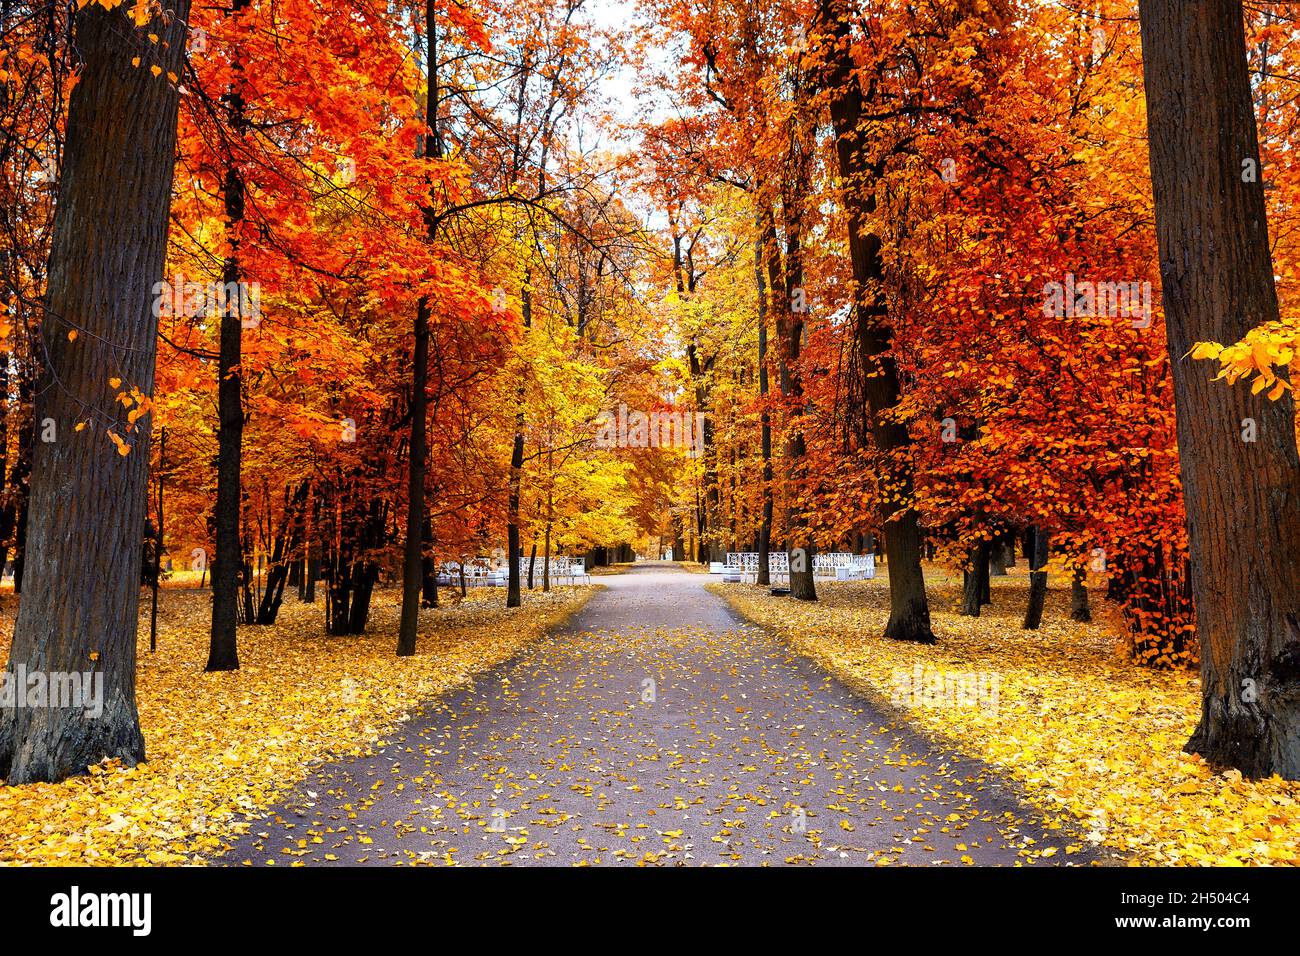 Paysage d'automne, beau parc de la ville avec des feuilles jaunes tombées. Paysage d'automne avec sentier dans une forêt colorée. Banque D'Images